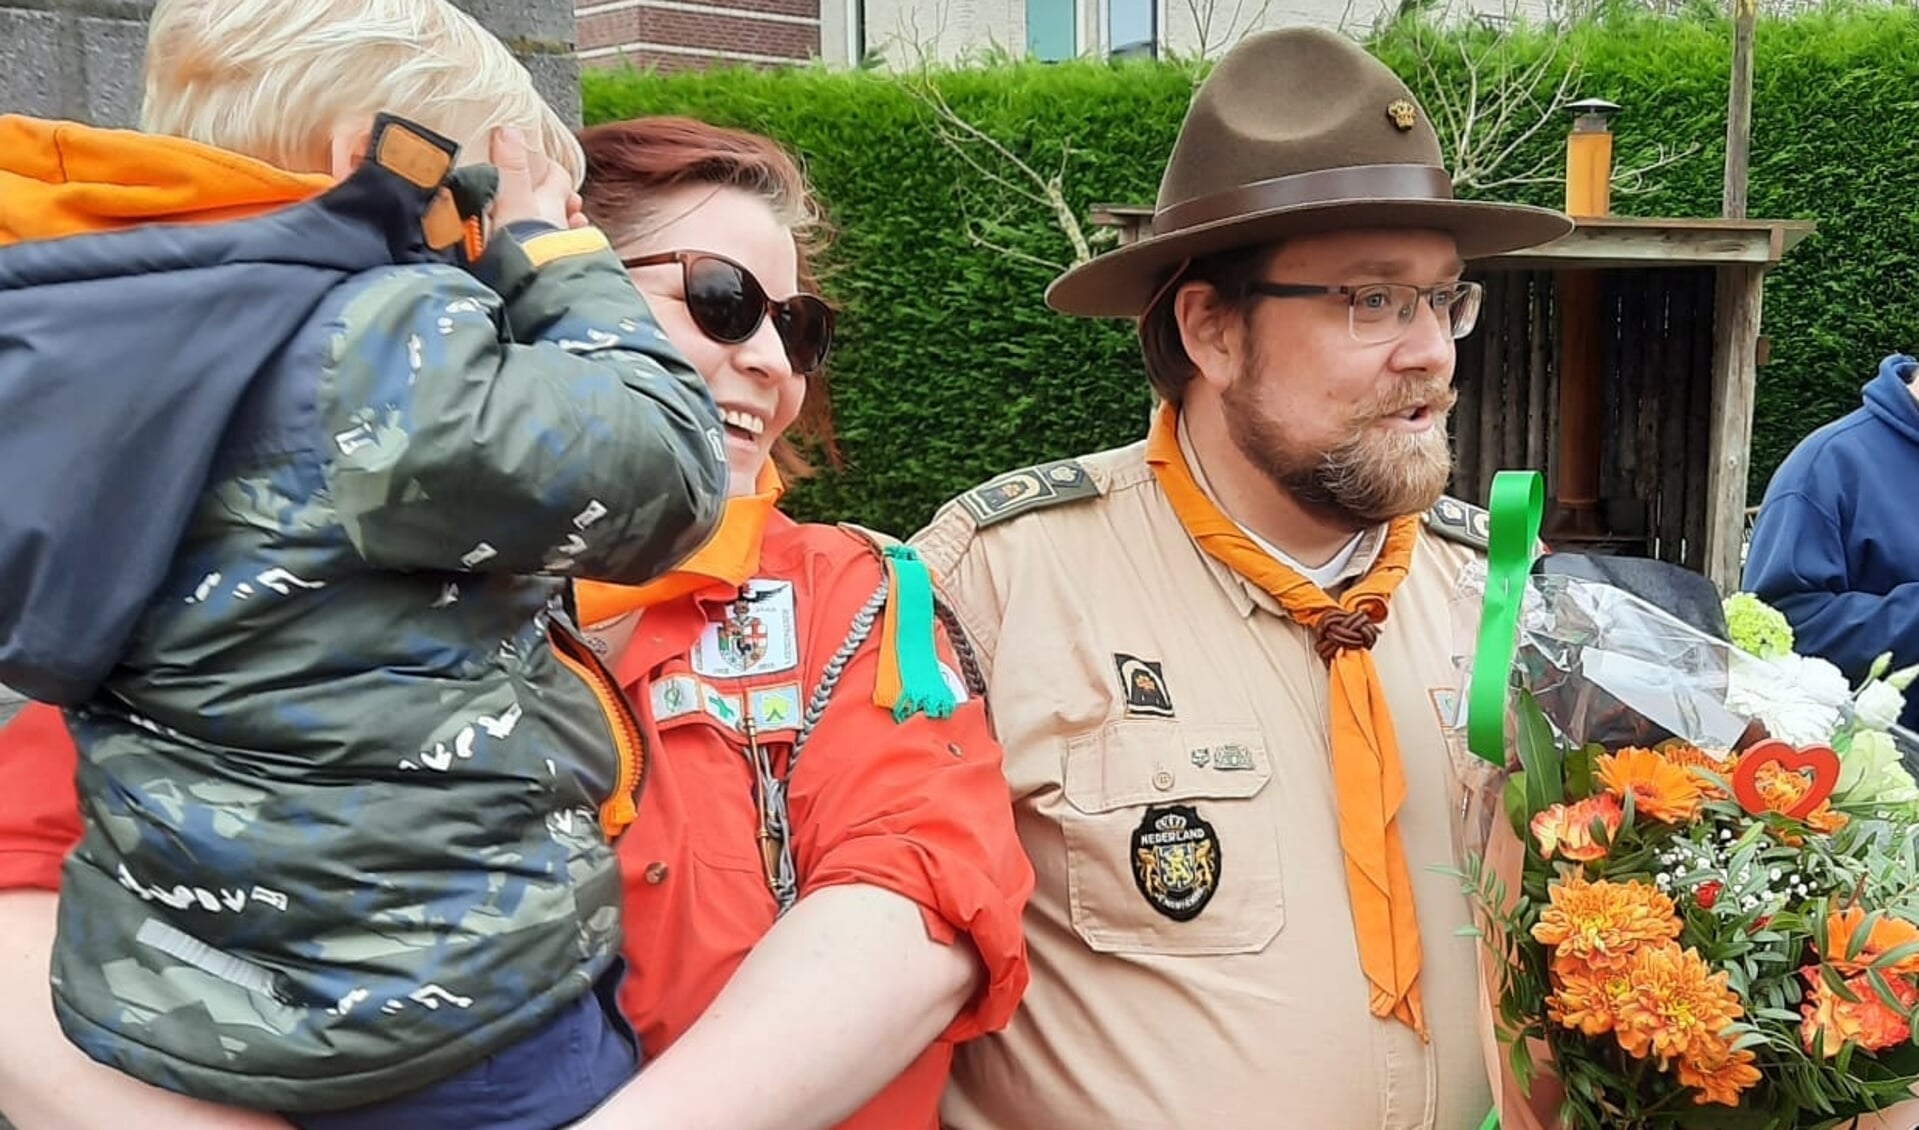 Kevin van Hengel is al jarenlang op vele manieren actief als vrijwilliger in Rotterdam, waaronder Scouting Kralingse Troep. Foto's: facebook.com/kralingschetroep.nl